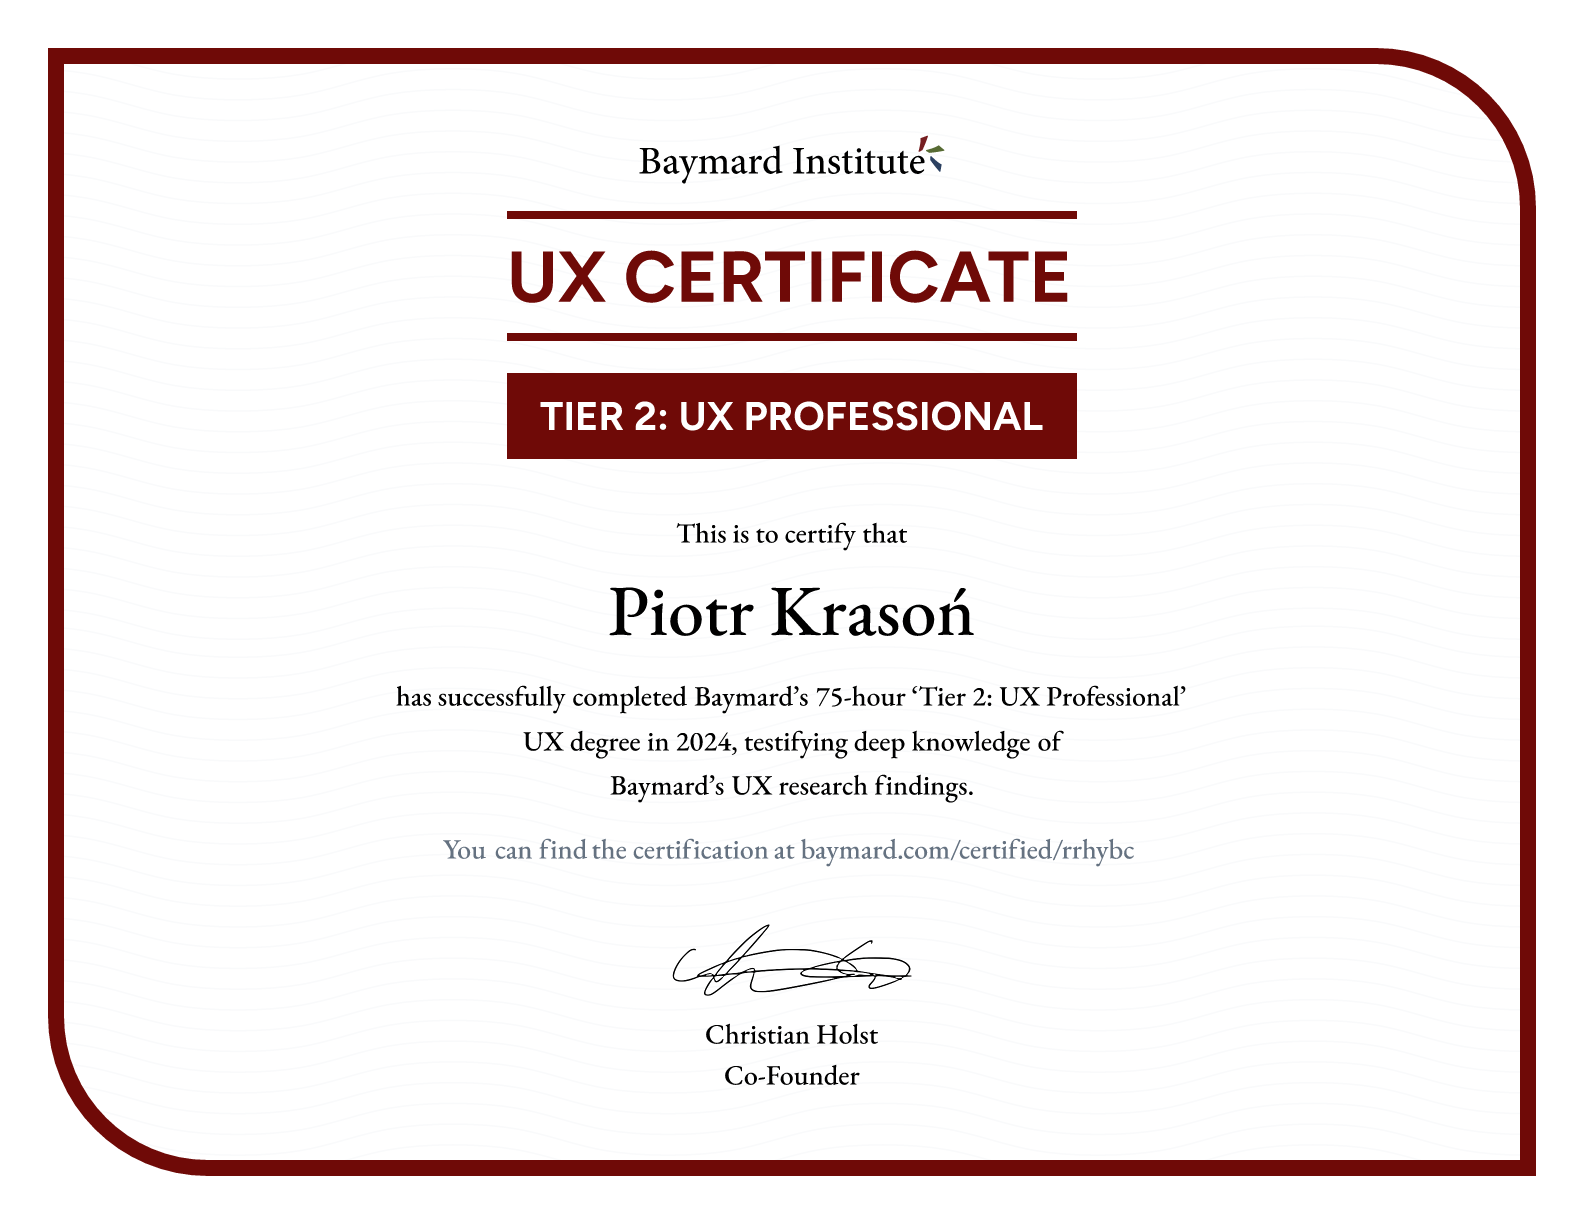 Piotr Krasoń’s certificate